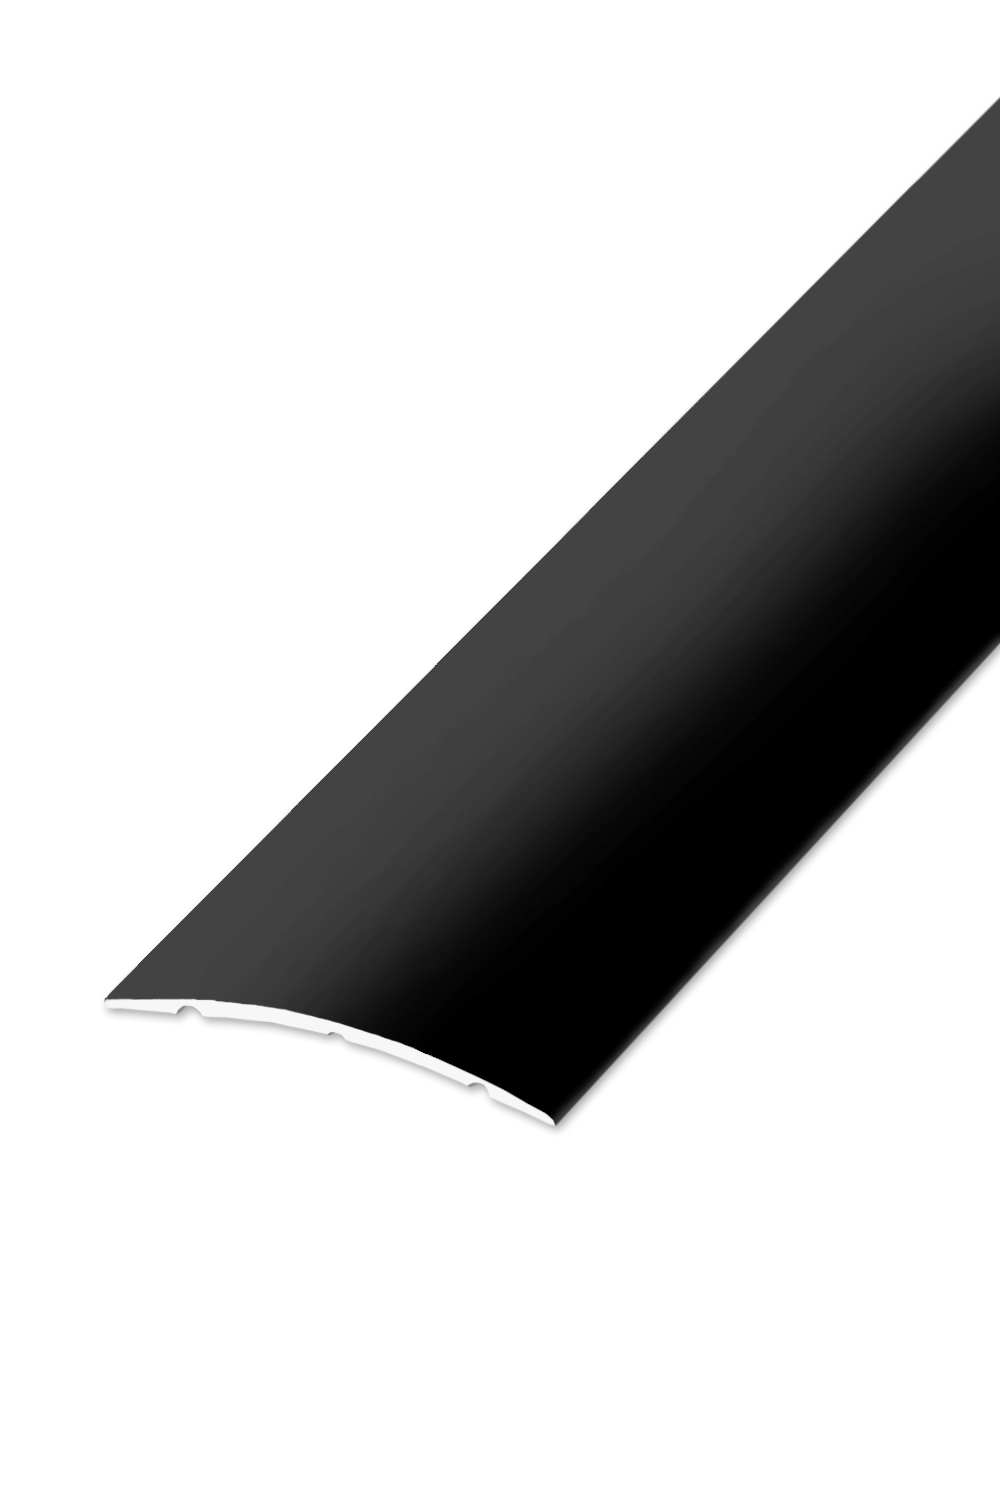 Přechodová lišta STANDARD 32 - Černá Matná 90 cm